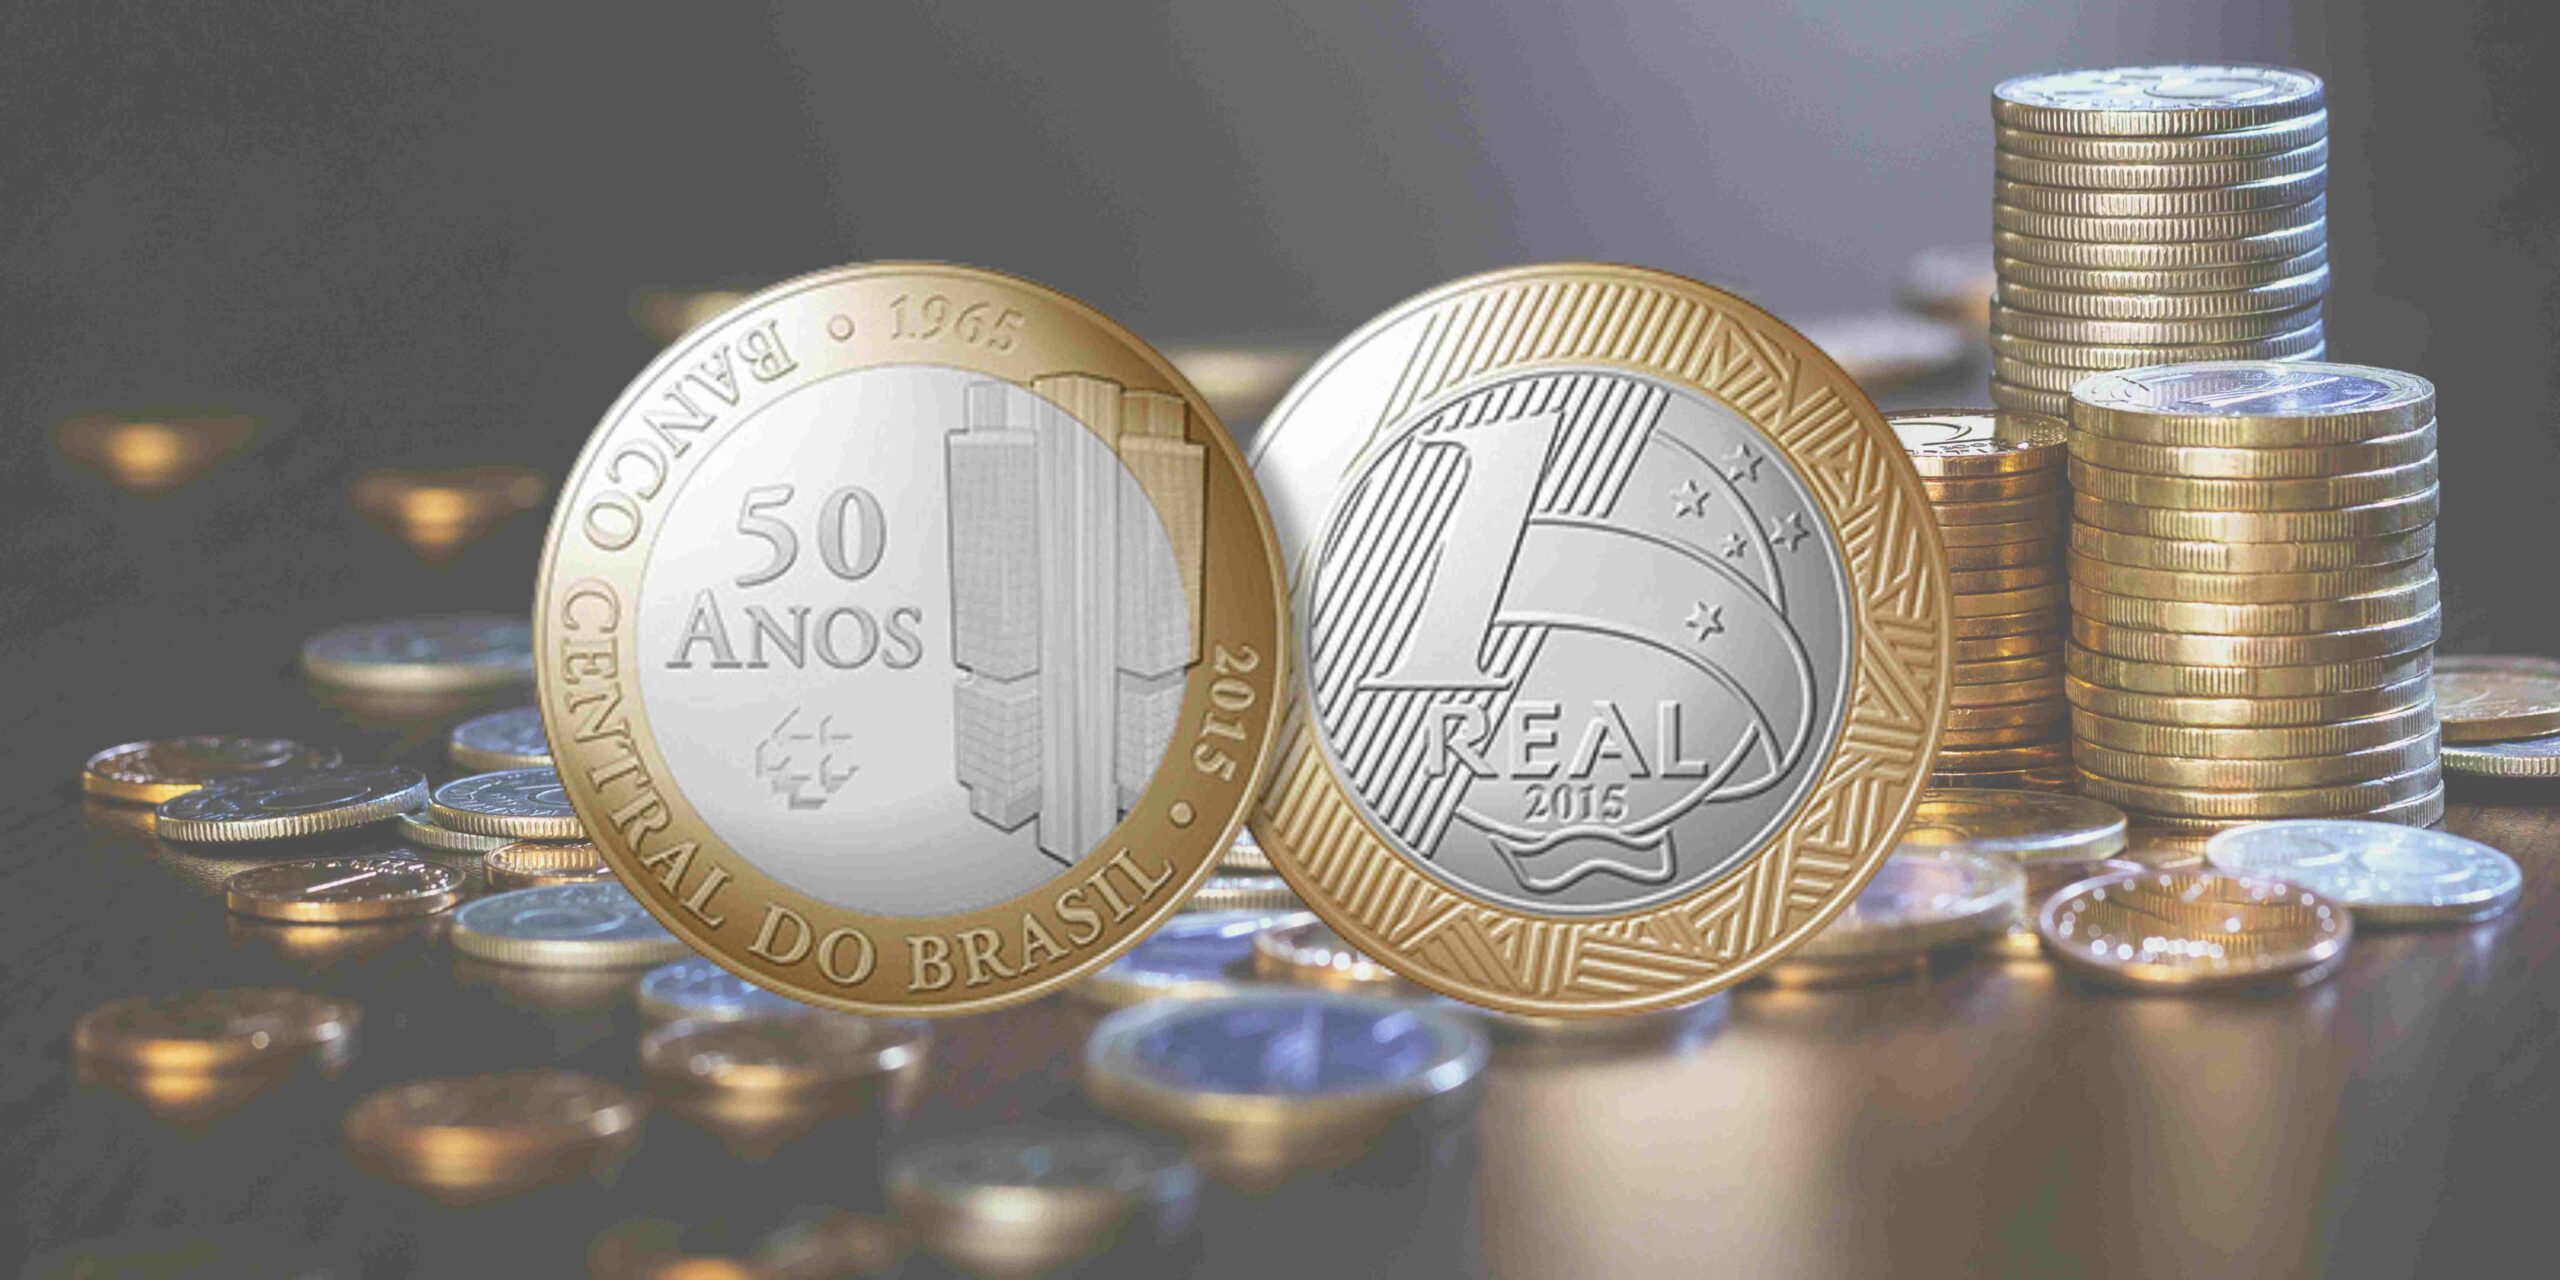 Você tem alguma das moedas do ANIVERSÁRIO do BANCO CENTRAL? Veja quanto elas podem valer!